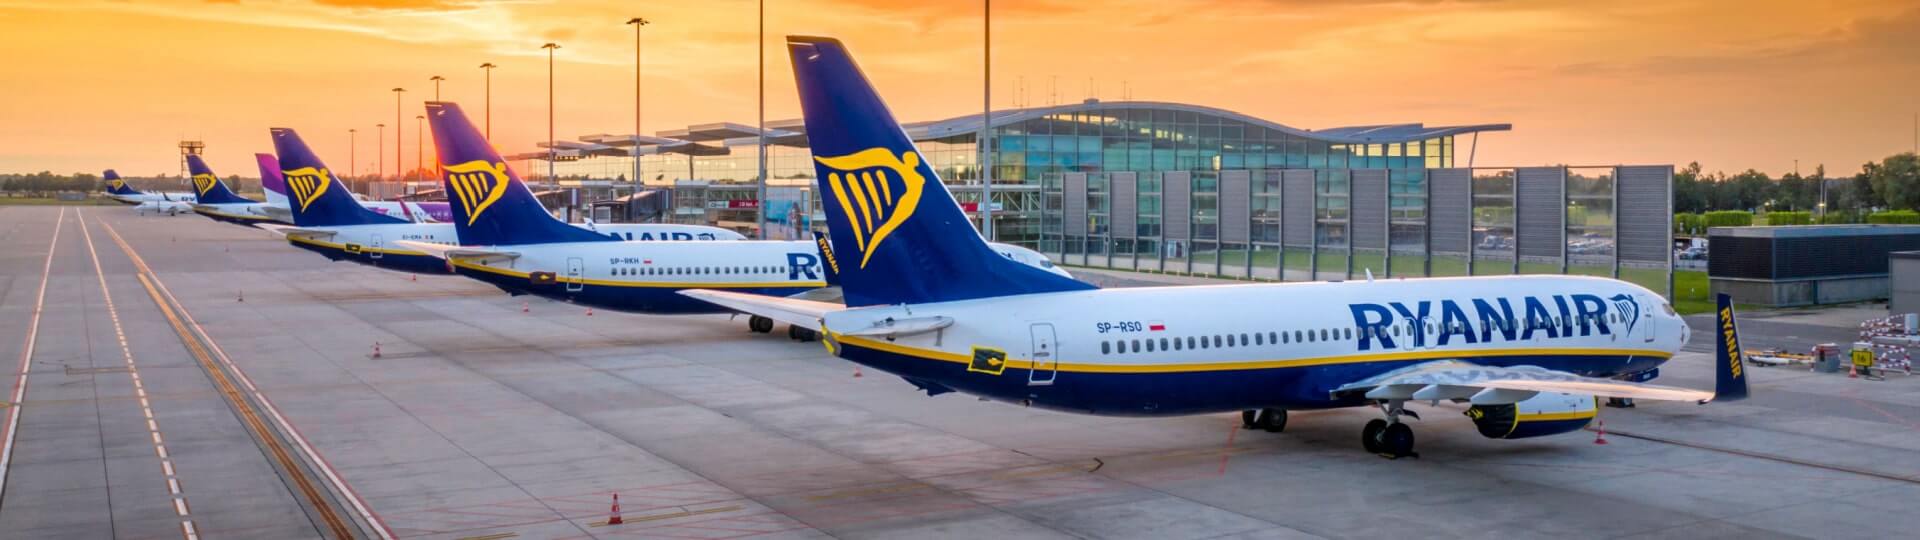 Ryanair měl za kvartál rekordní zisk po zdanění